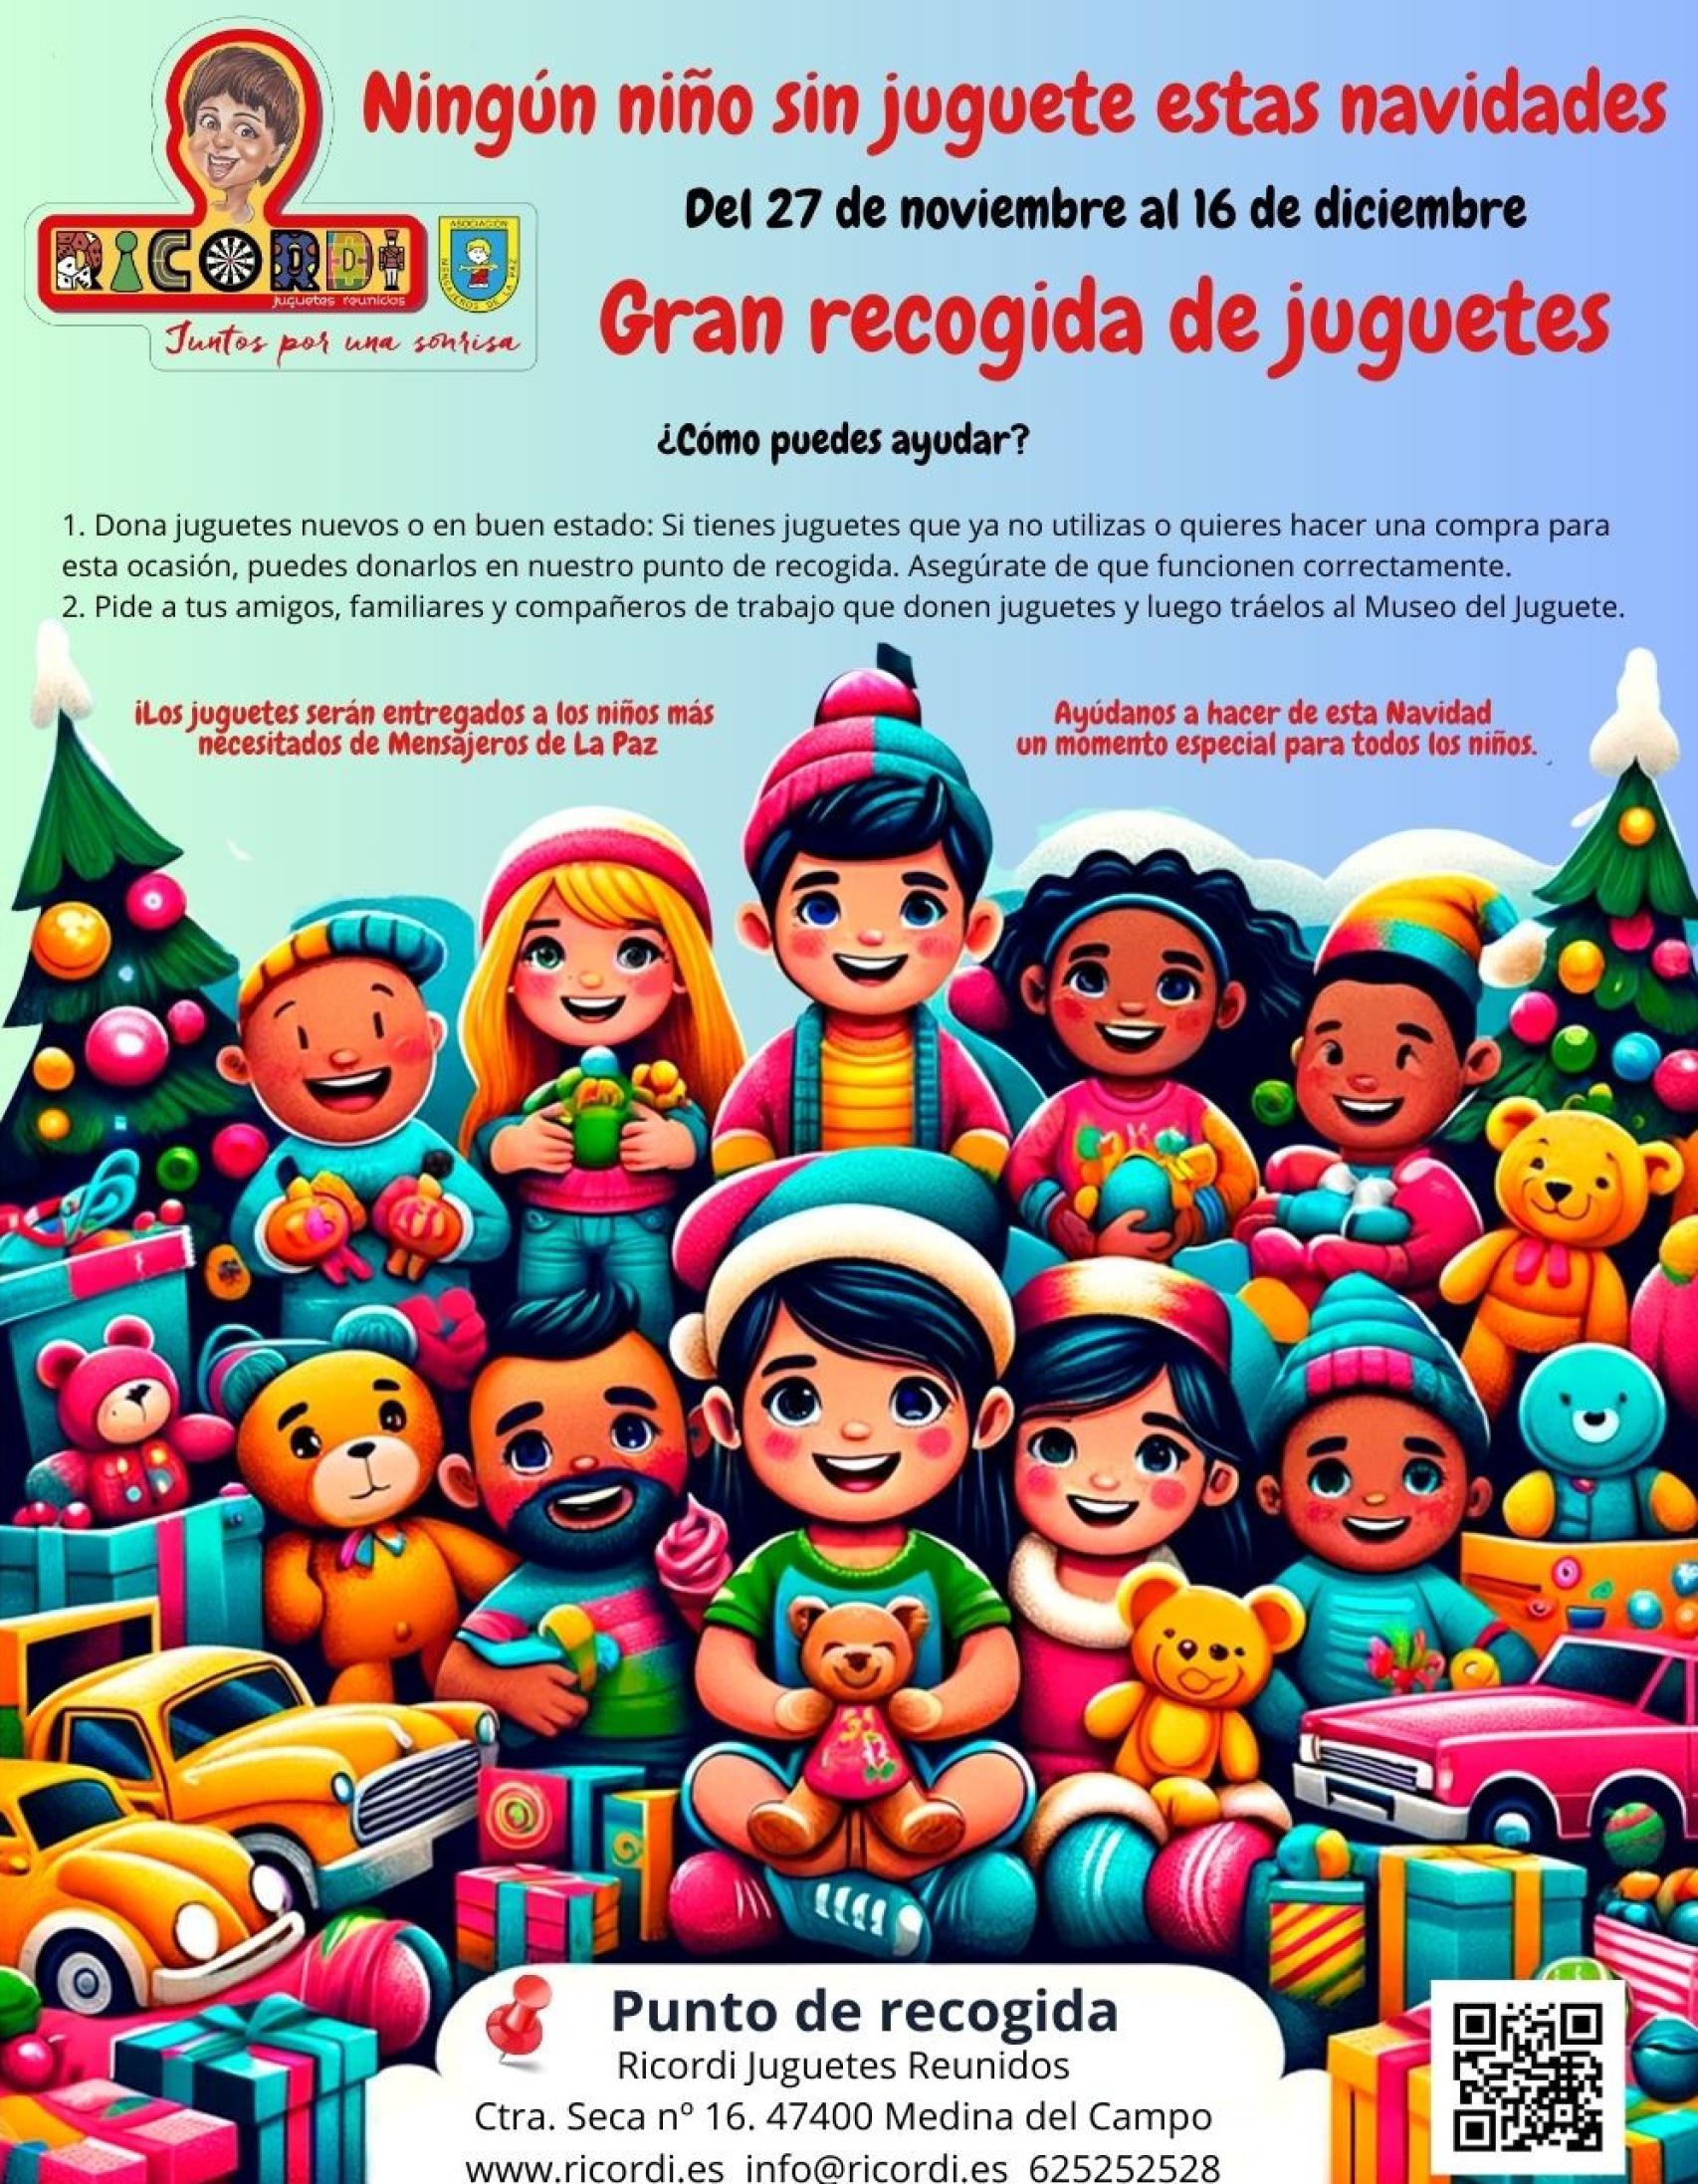 Cartel de la iniciativa de la campaña de recogida de juguetes en El Museo del Juguete de Medina del Campo